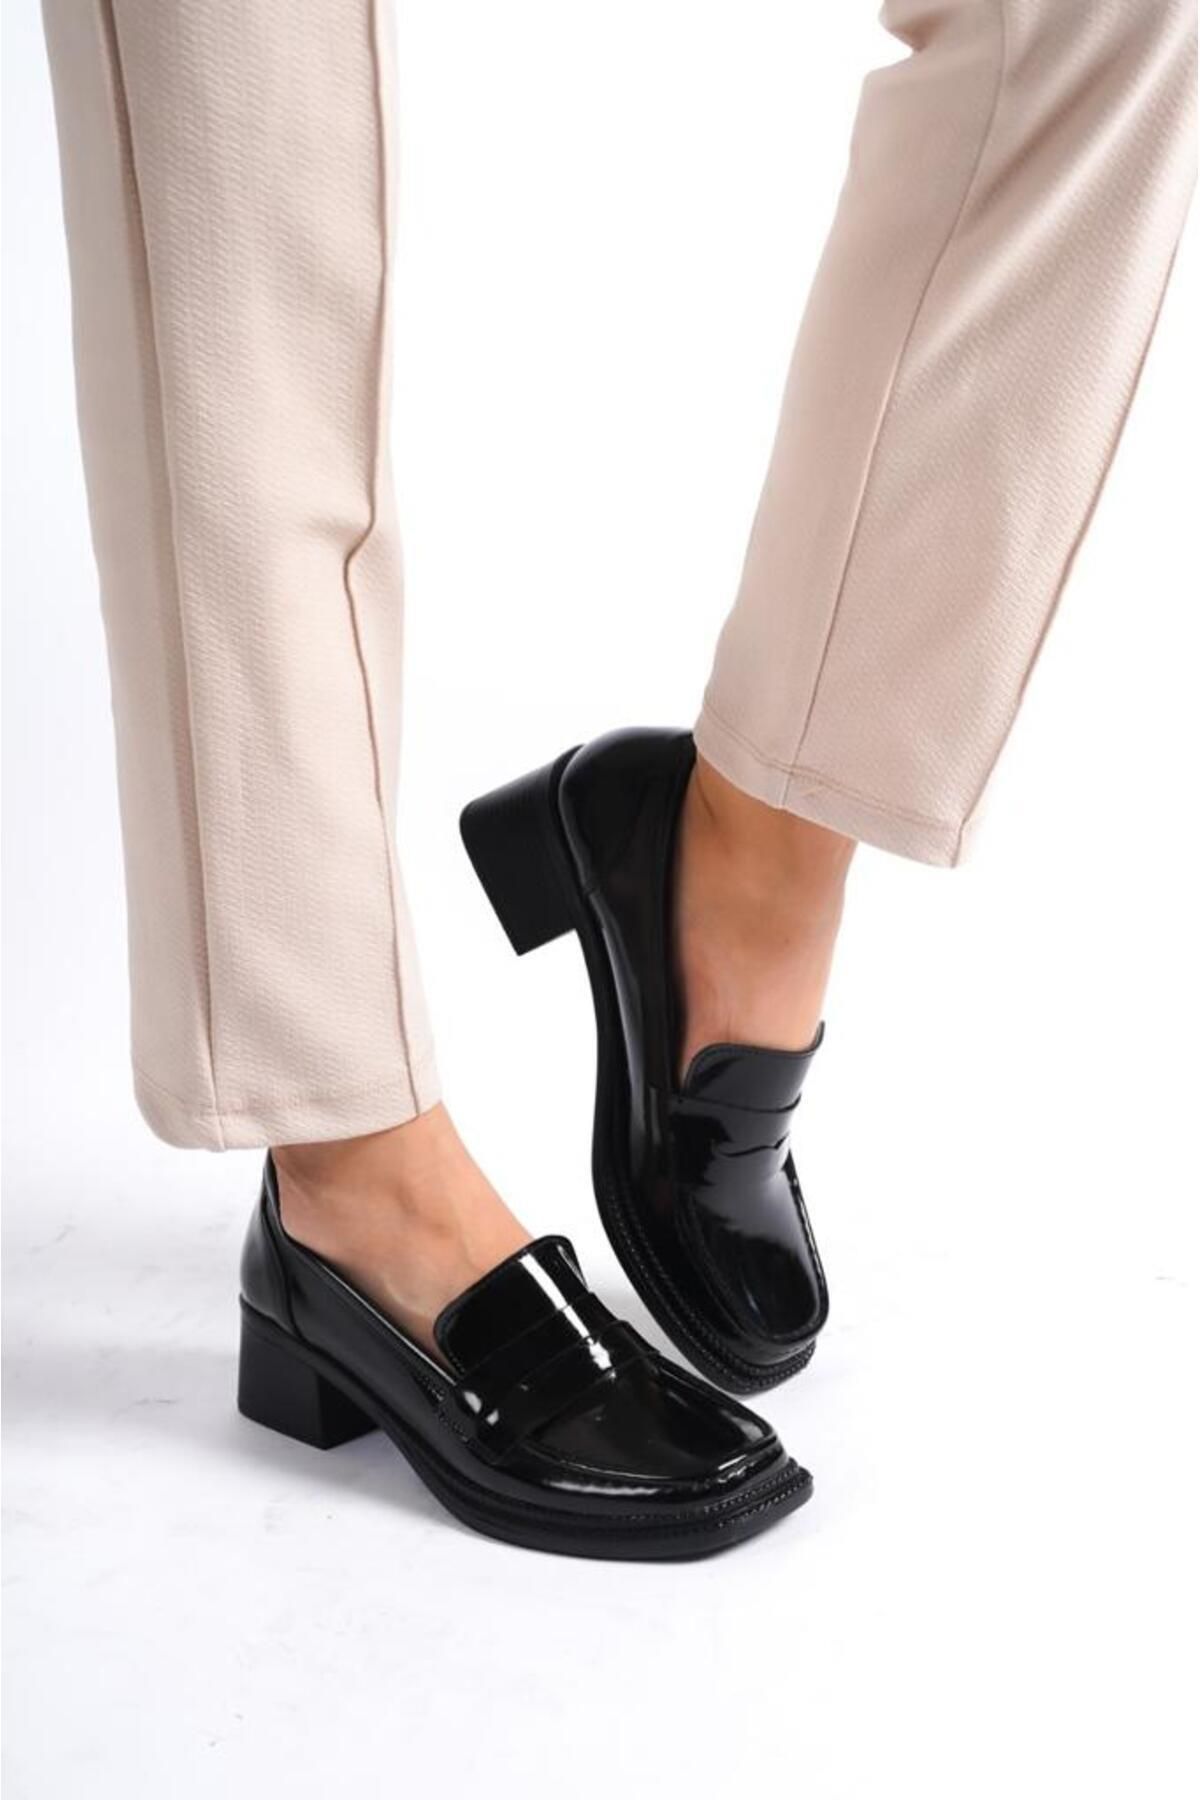 Şenpa Delbin Kadın Siyah Rugan Topuklu Günlük Ayakkabı